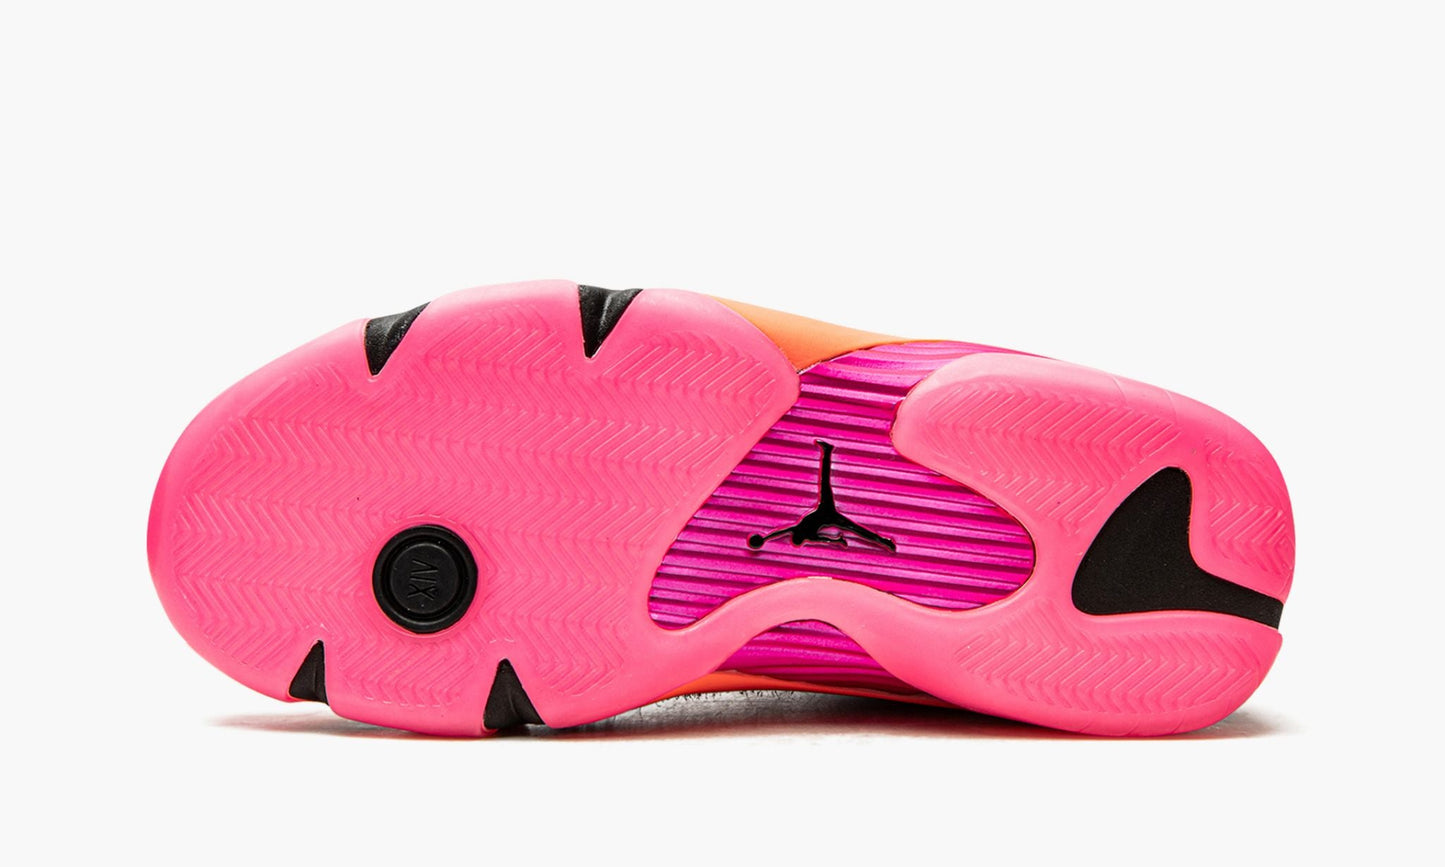 Air Jordan 14 Retro Low WMNS "Shocking Pink"